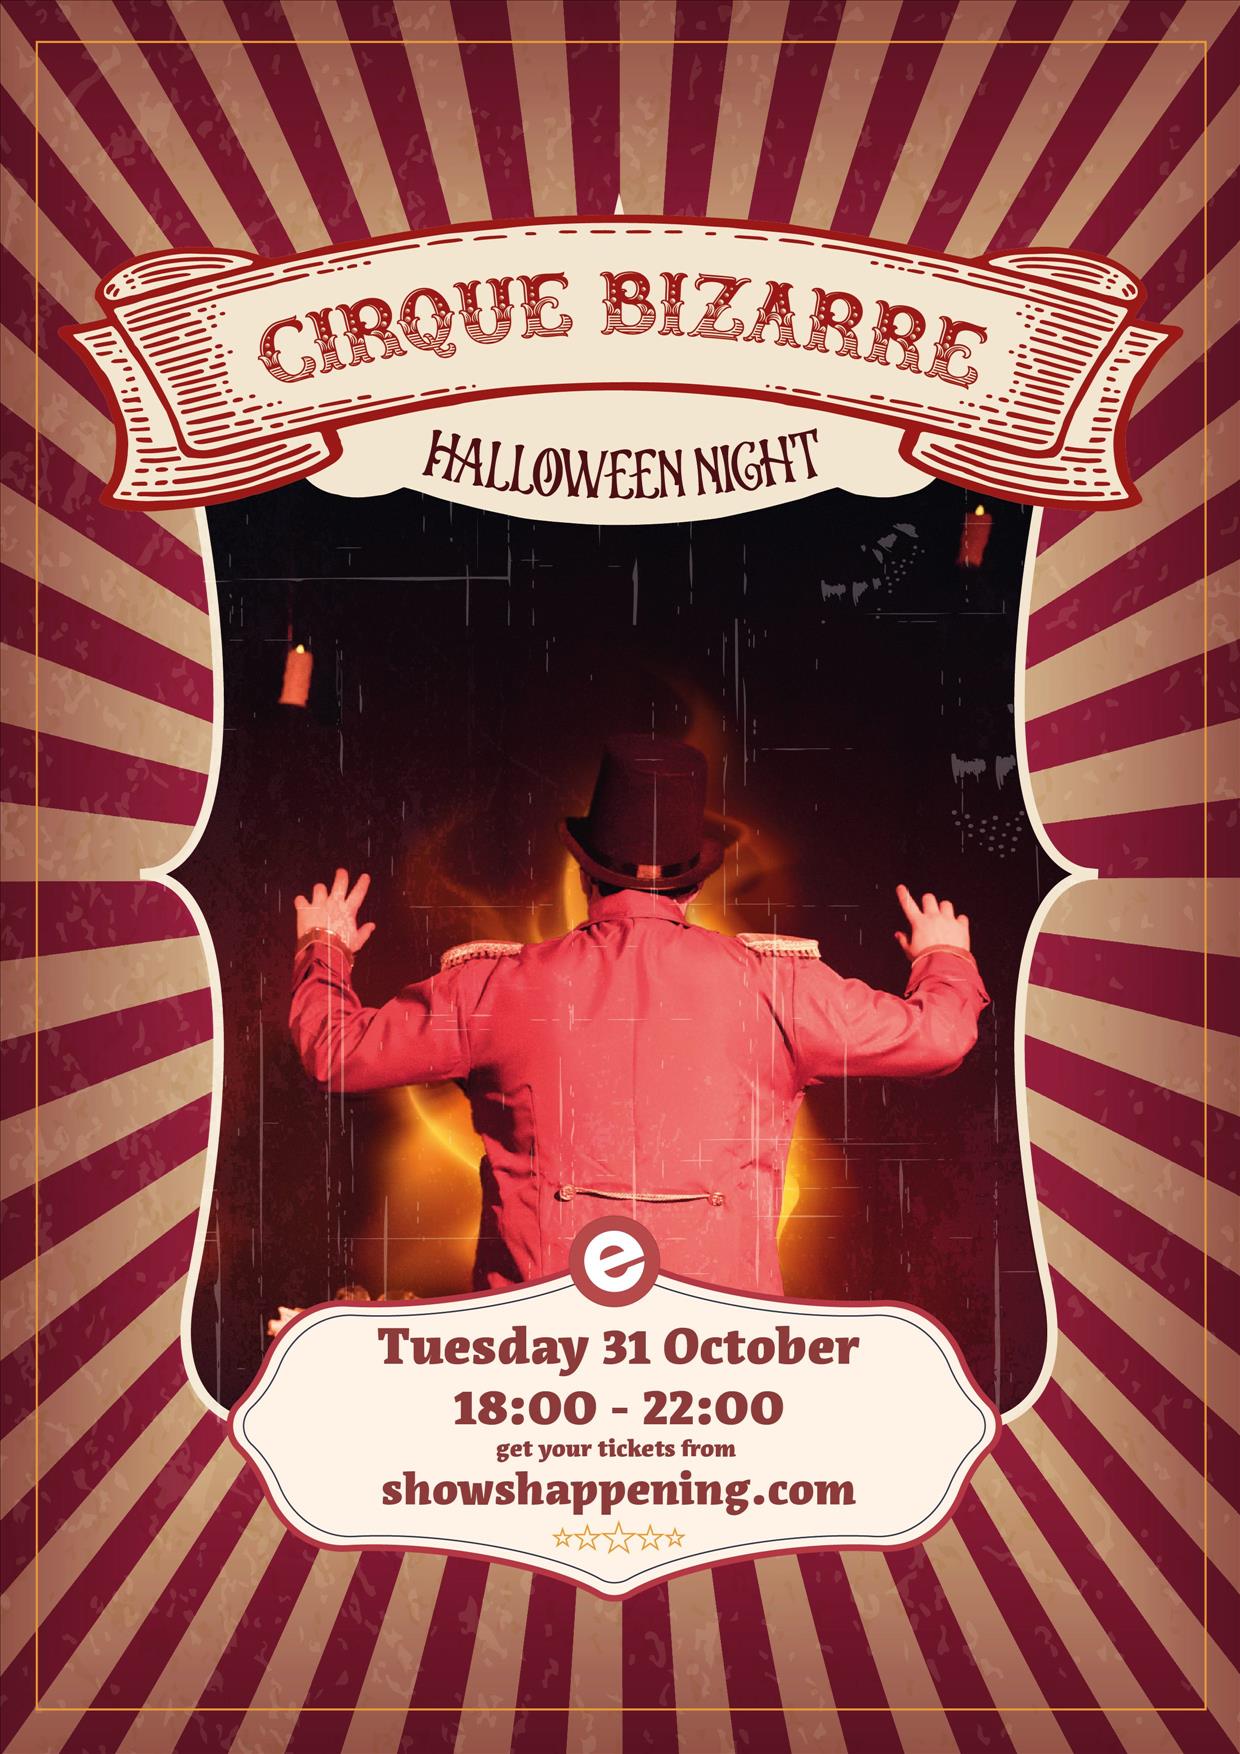 Cirque Bizarre poster